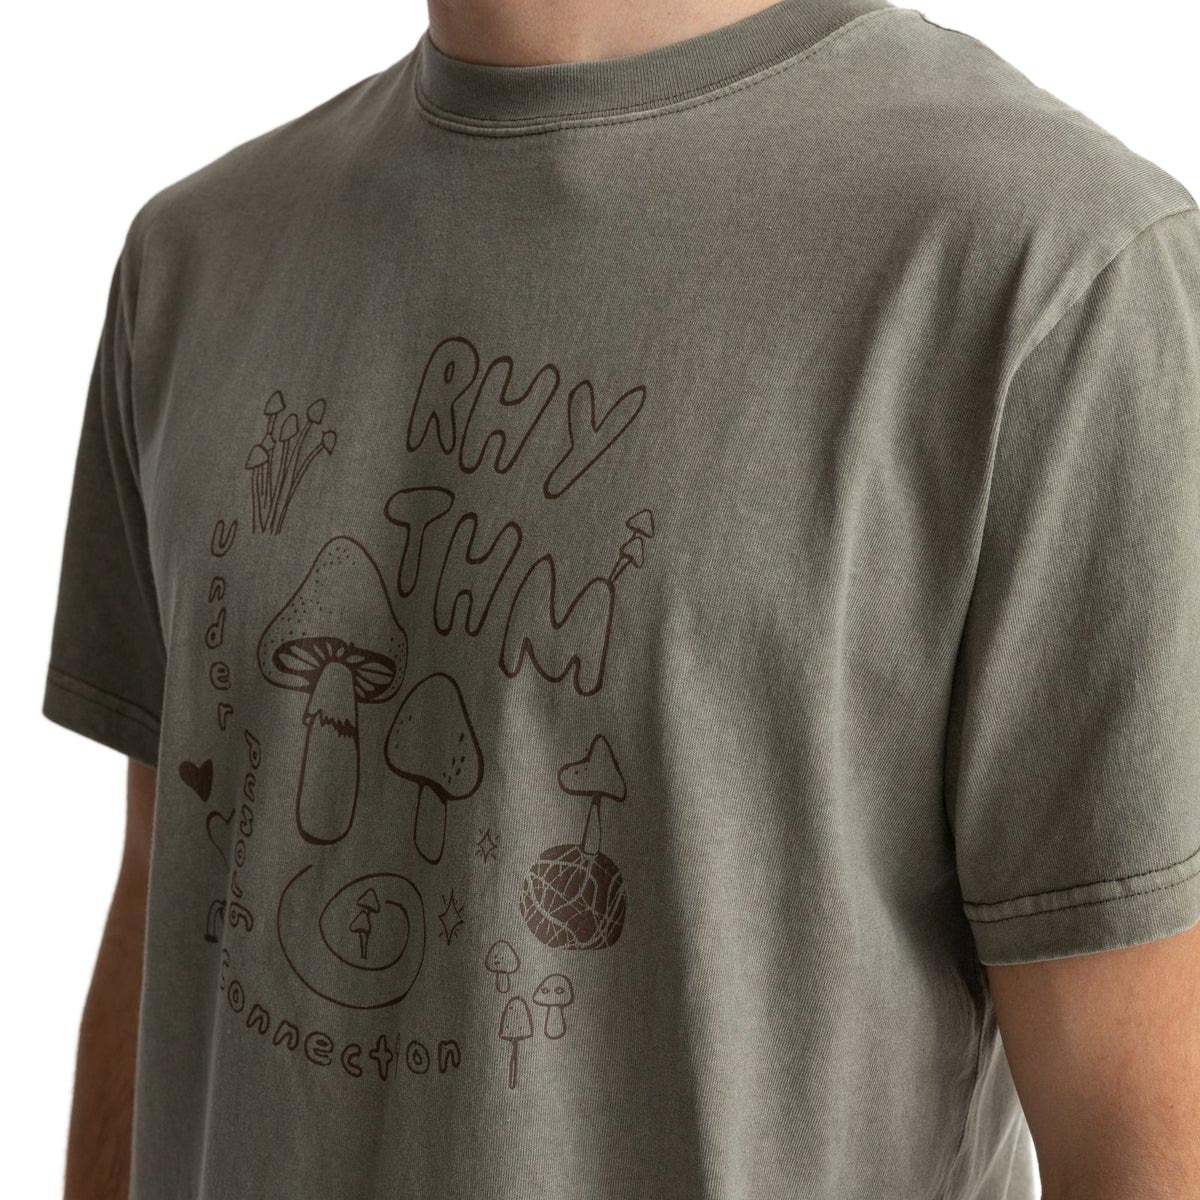 Rhythm Underground Vintage T-Shirt - Sage image 4